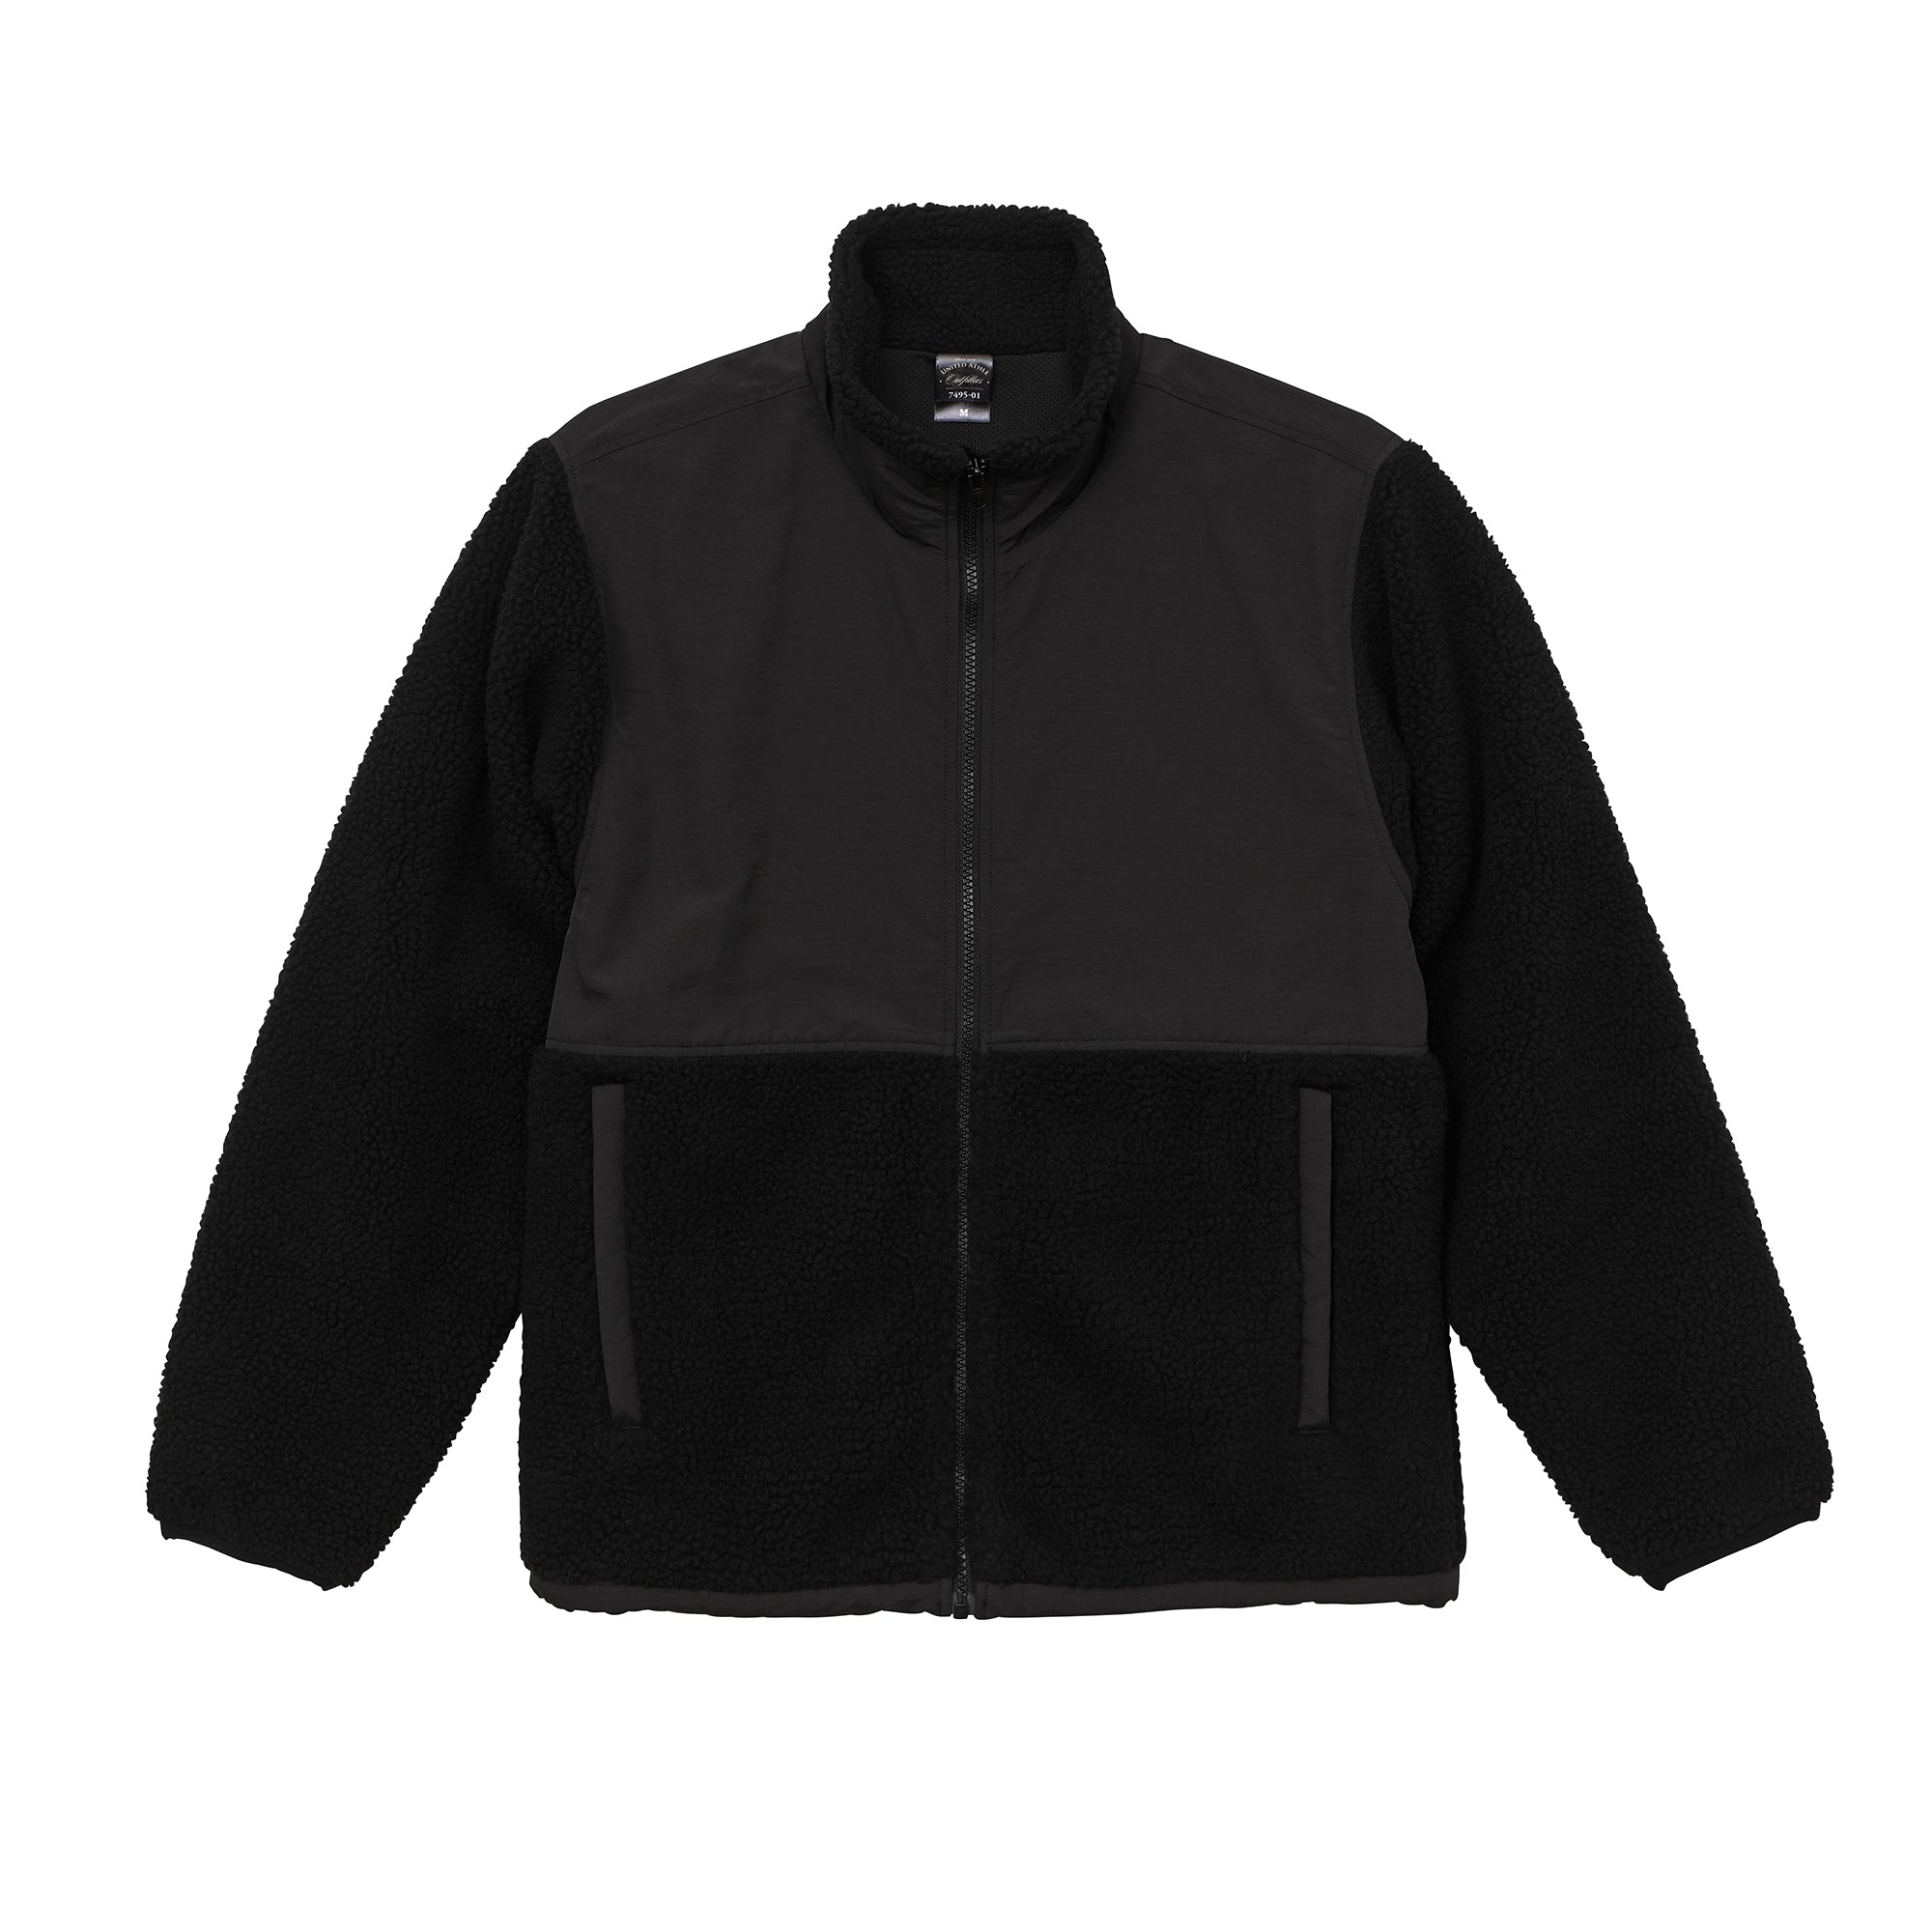 7495 - Fleece Zip Jacket - Black